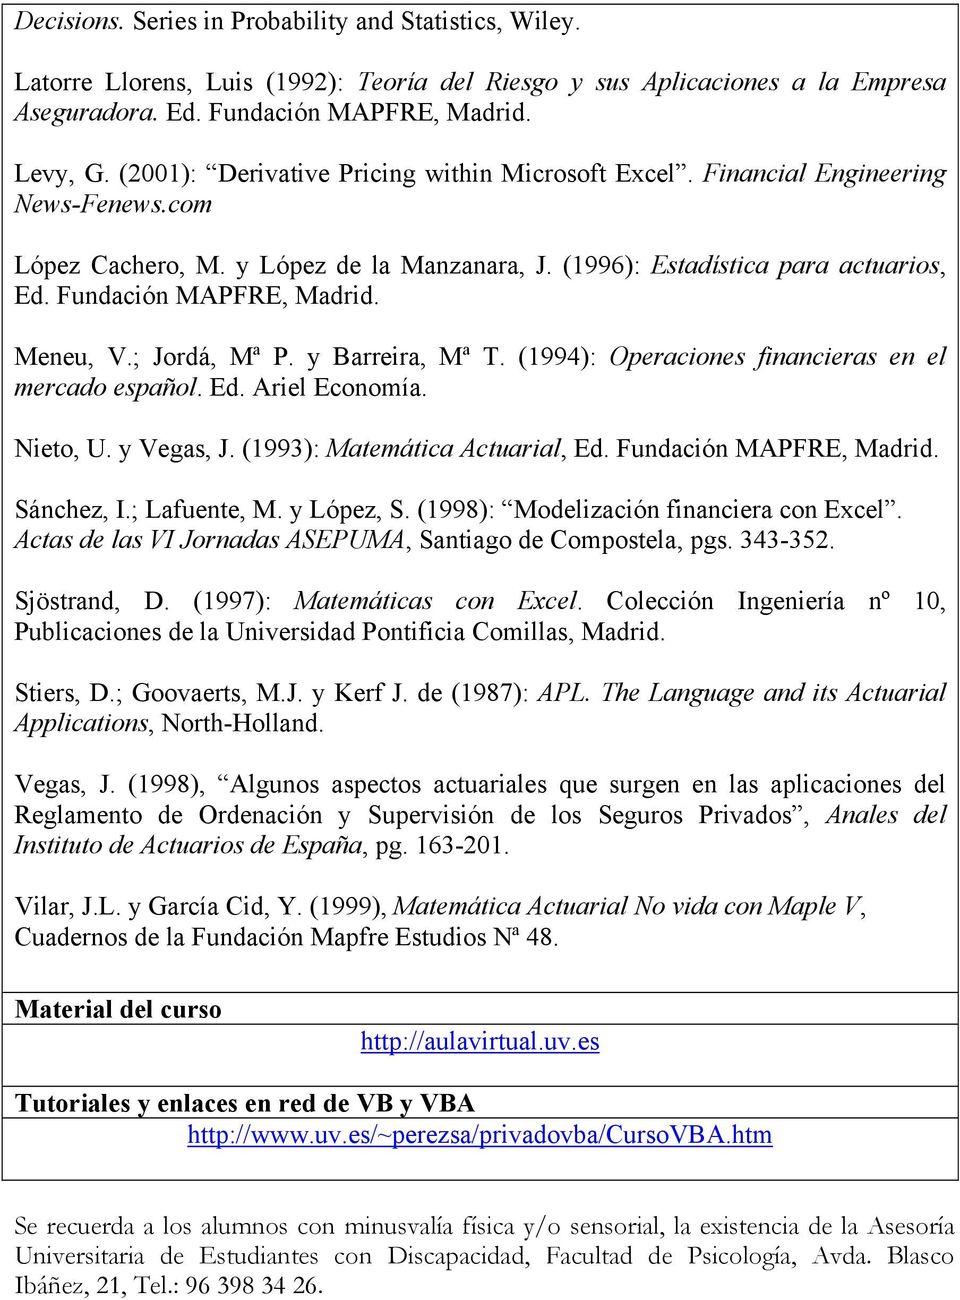 Meneu, V.; Jordá, Mª P. y Barreira, Mª T. (1994): Operaciones financieras en el mercado español. Ed. Ariel Economía. Nieto, U. y Vegas, J. (1993): Matemática Actuarial, Ed. Fundación MAPFRE, Madrid.